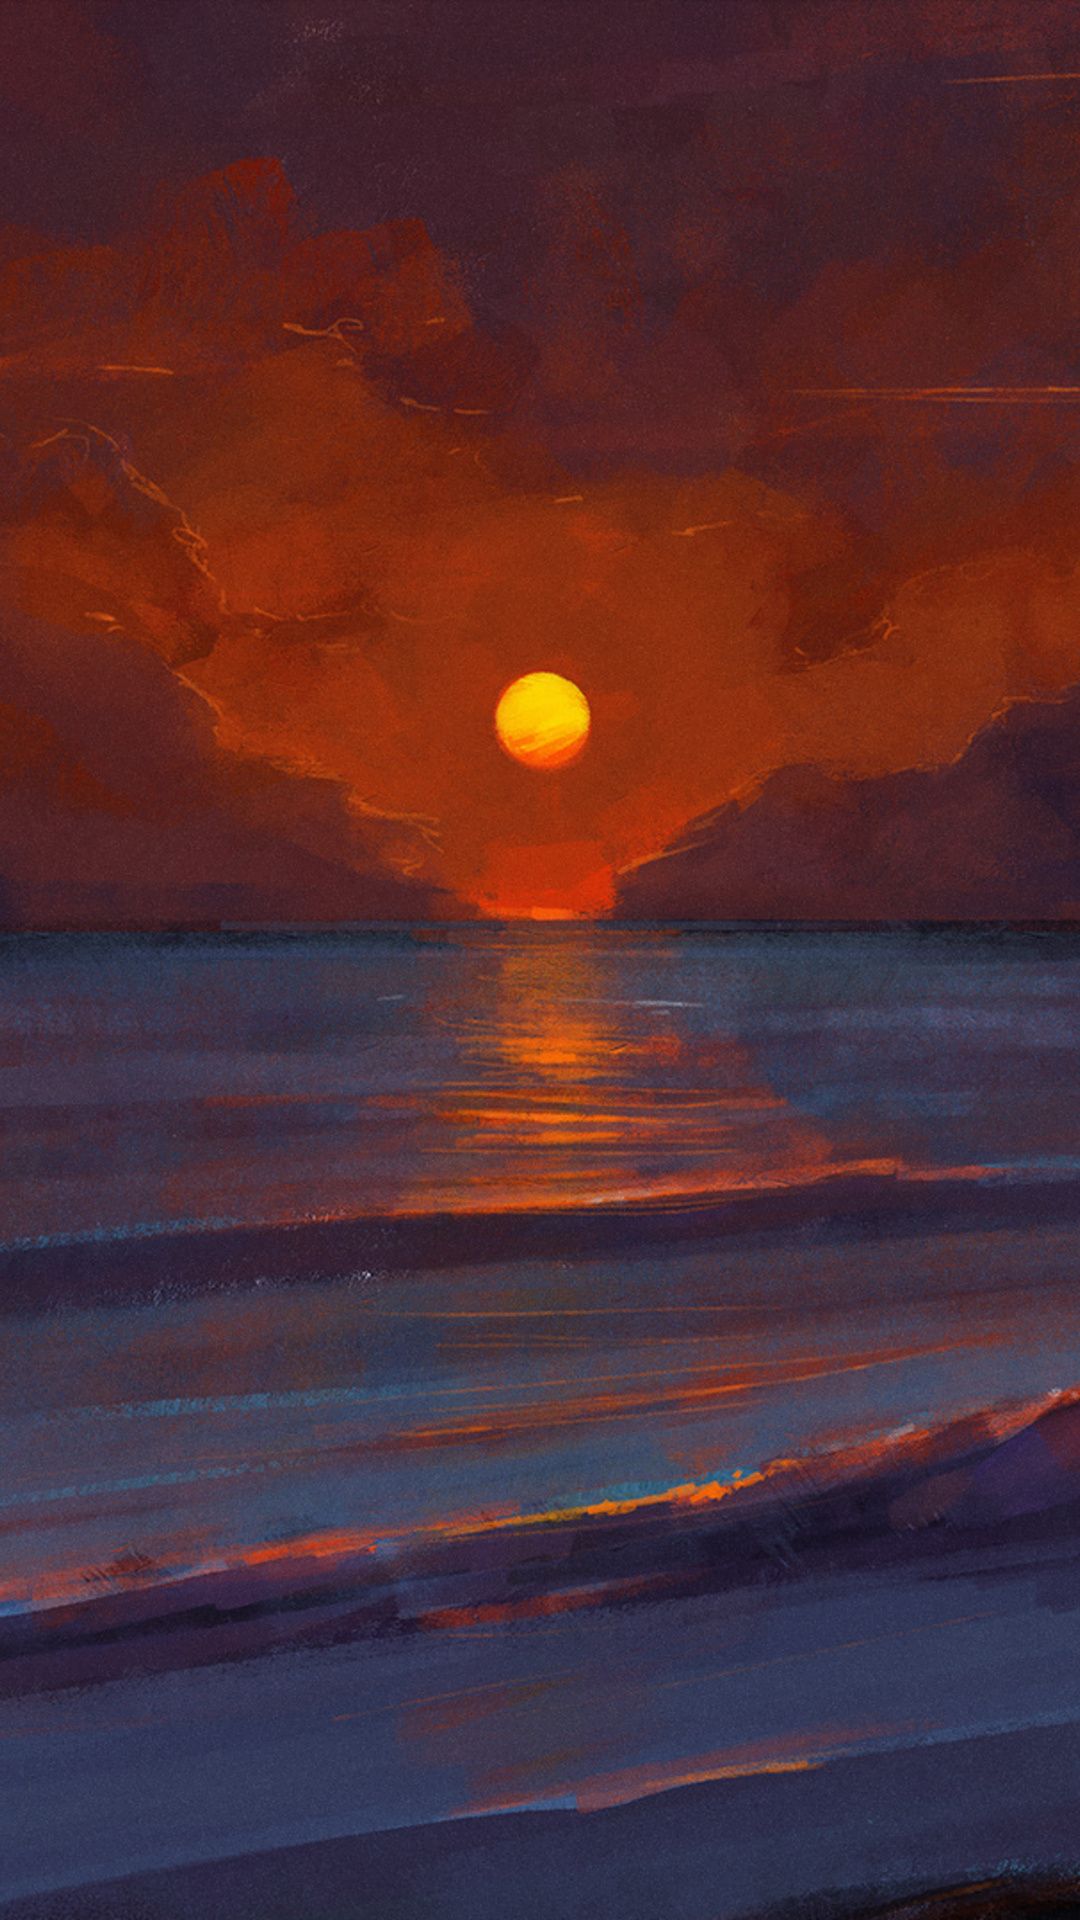 Sunset Digital Art In 1080x1920 Resolution. Sunrise art, Sunset art, Sunset artwork